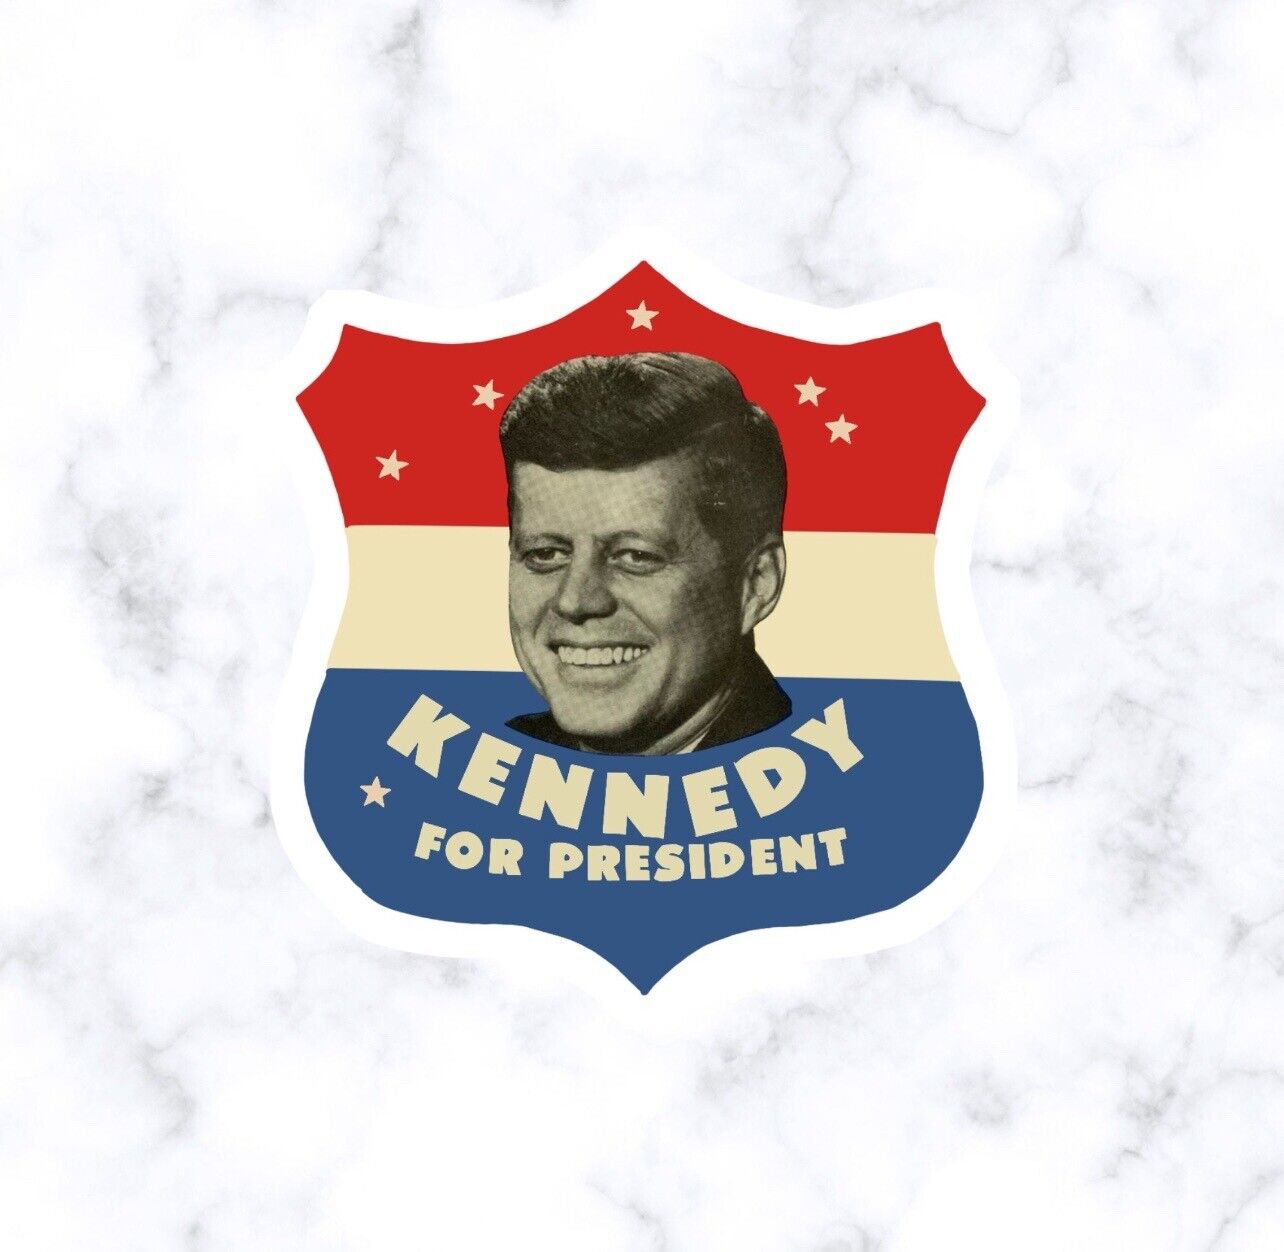 John F Kennedy for President Sticker